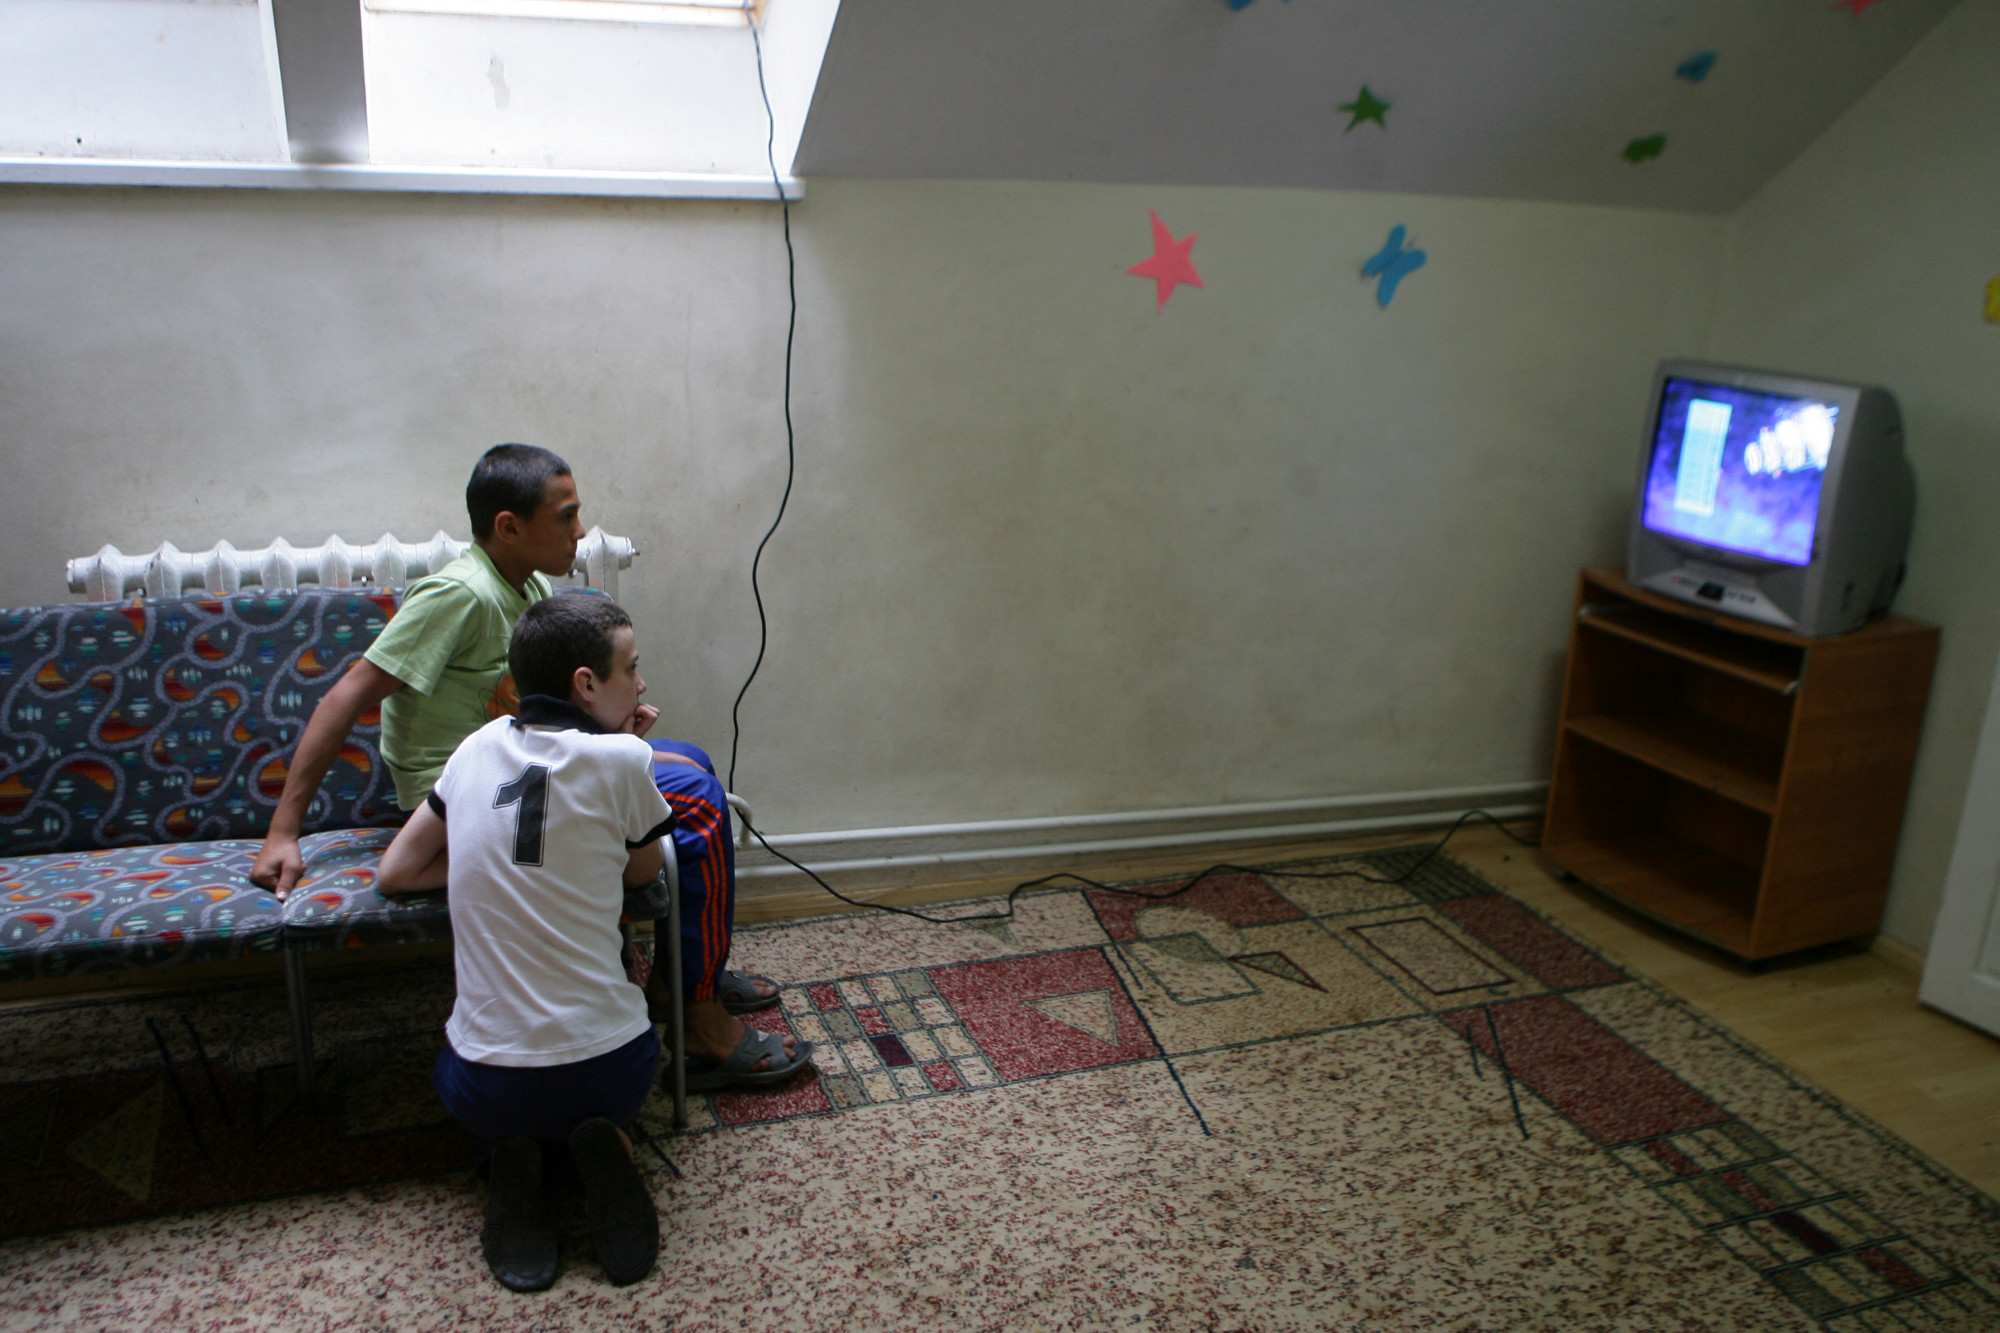 Betiltottak hat tévét Moldovában, mert nem megfelelően tájékoztatak a háborúról